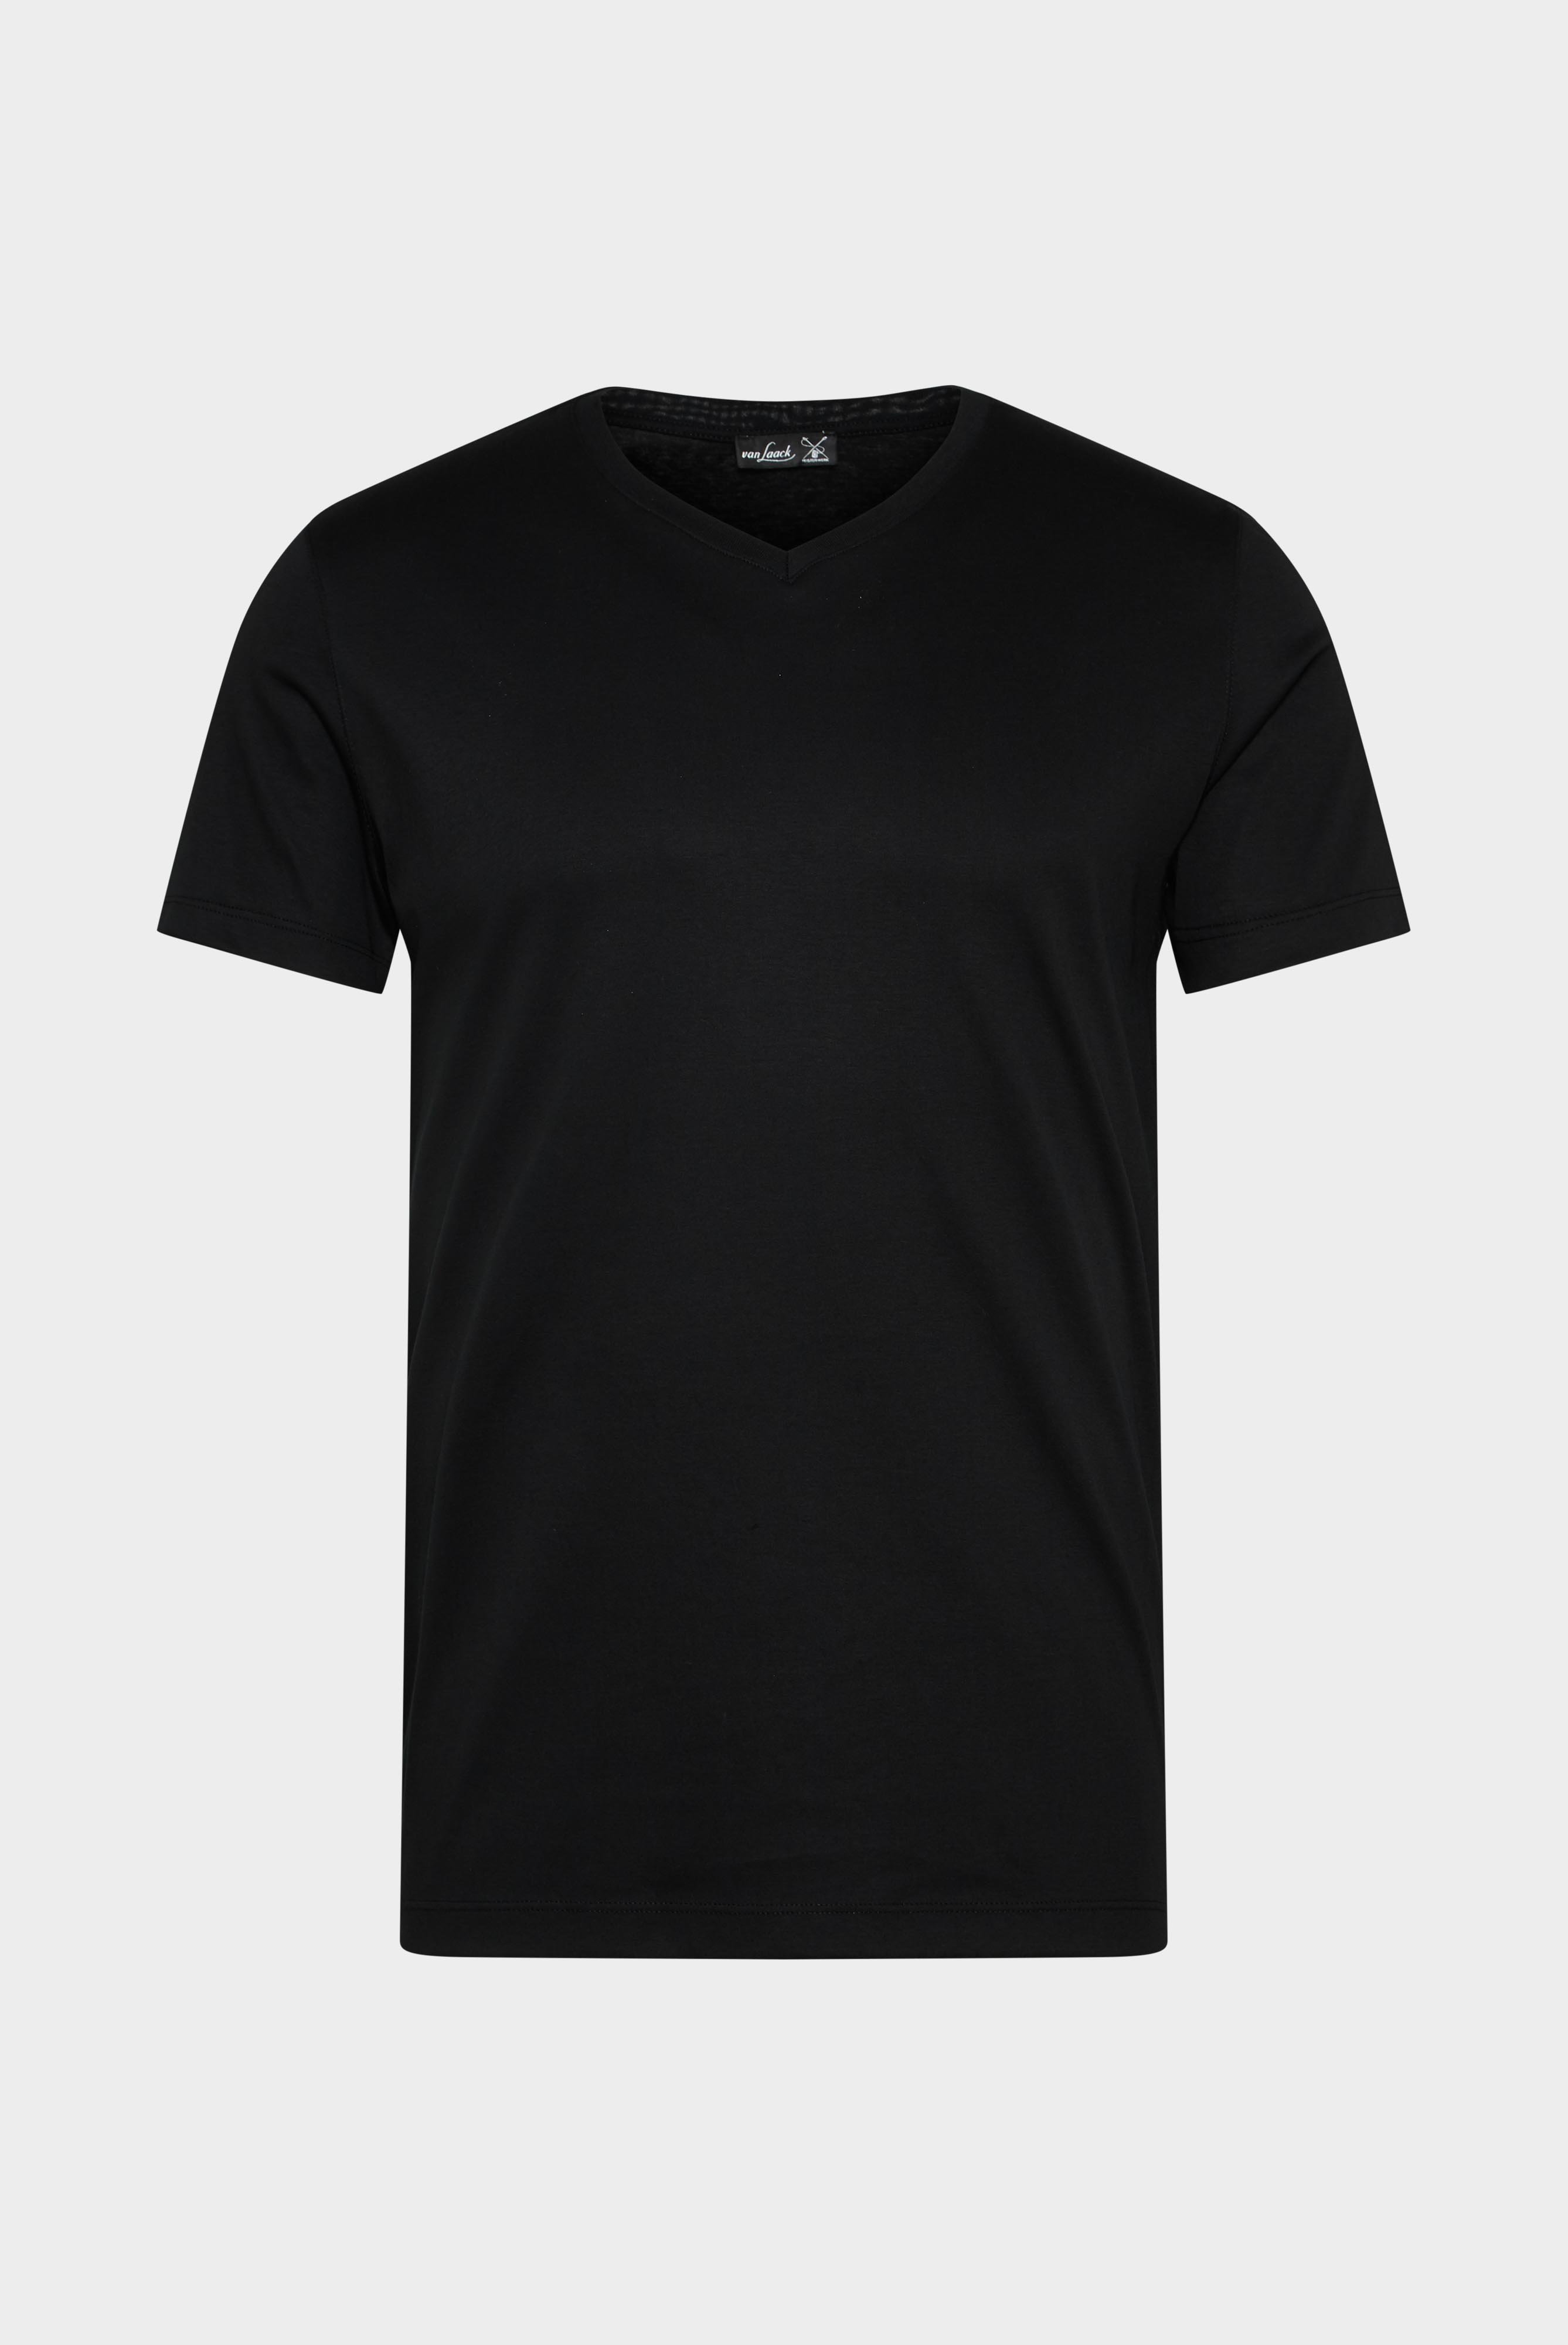 T-Shirts+V-Ausschnitt Jersey T-Shirt Slim Fit+20.1715.UX.180031.099.M